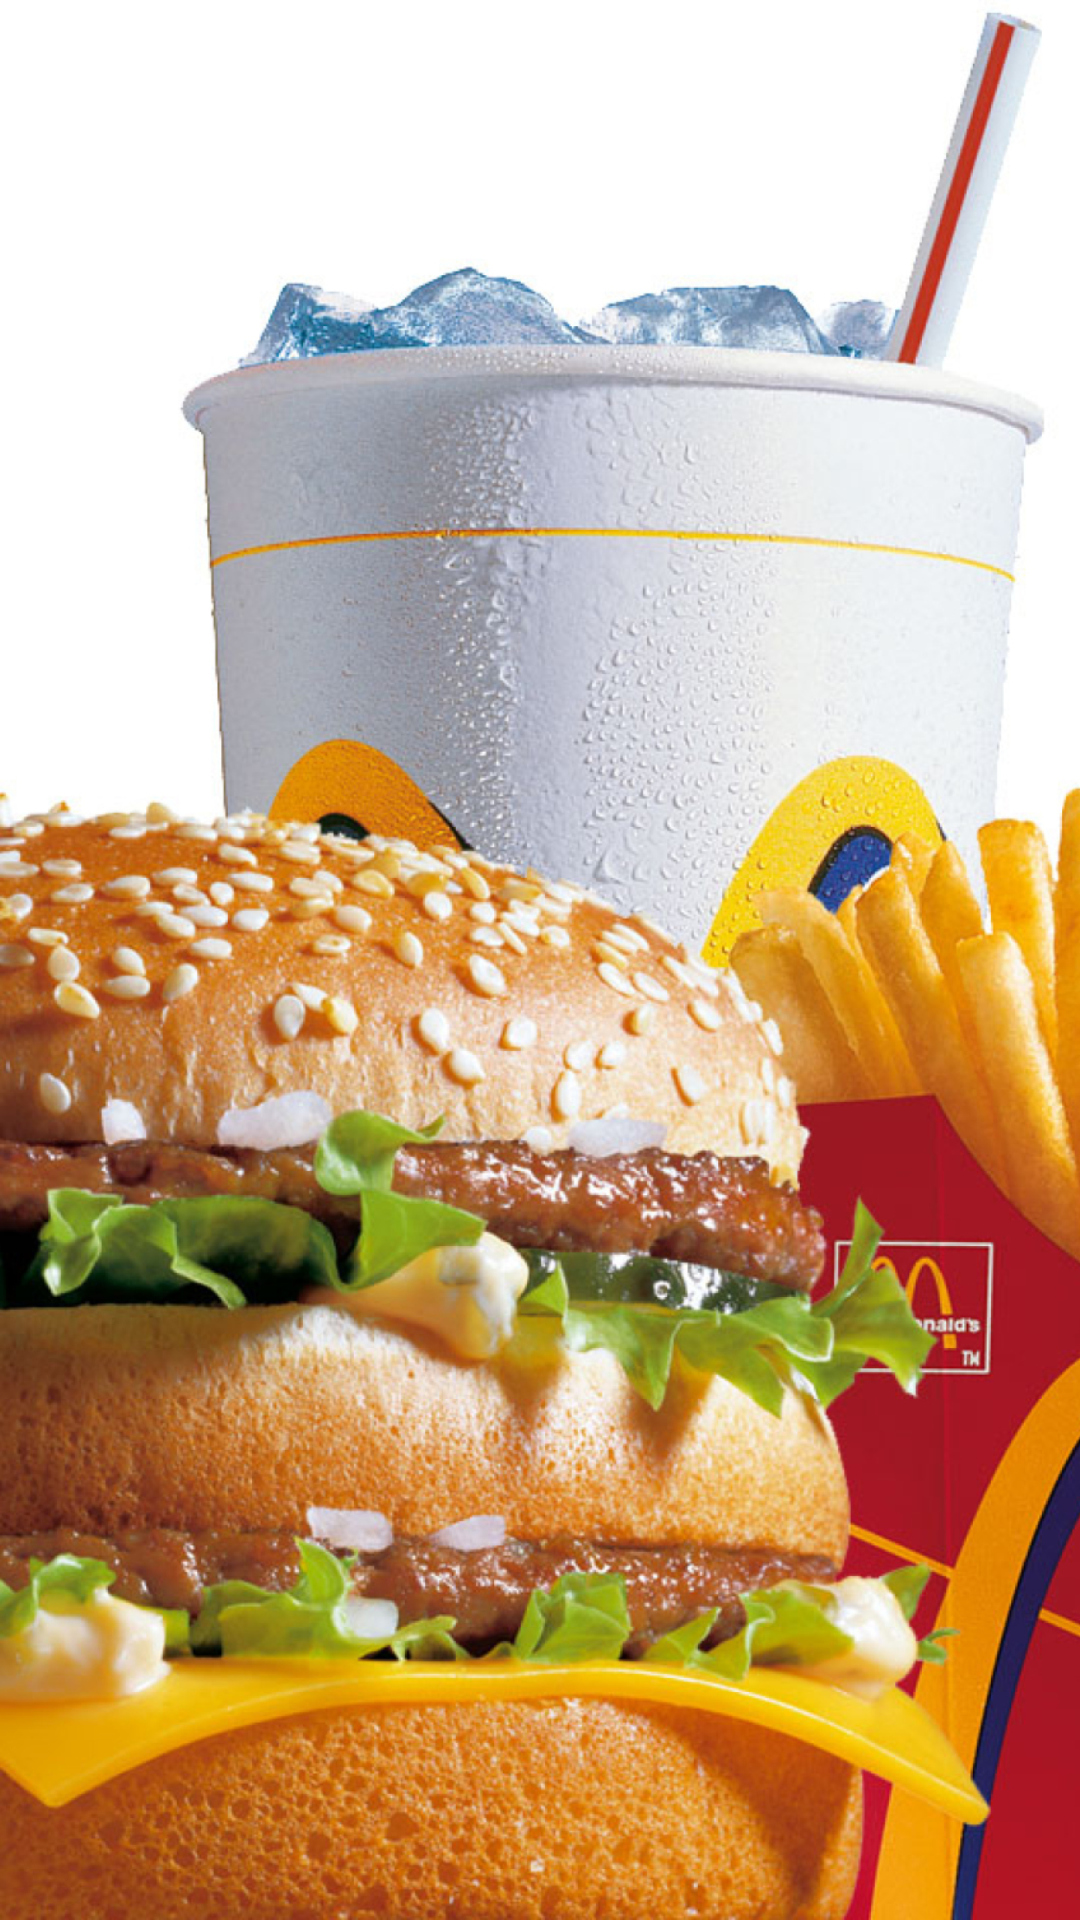 McDonalds: Big Mac screenshot #1 1080x1920